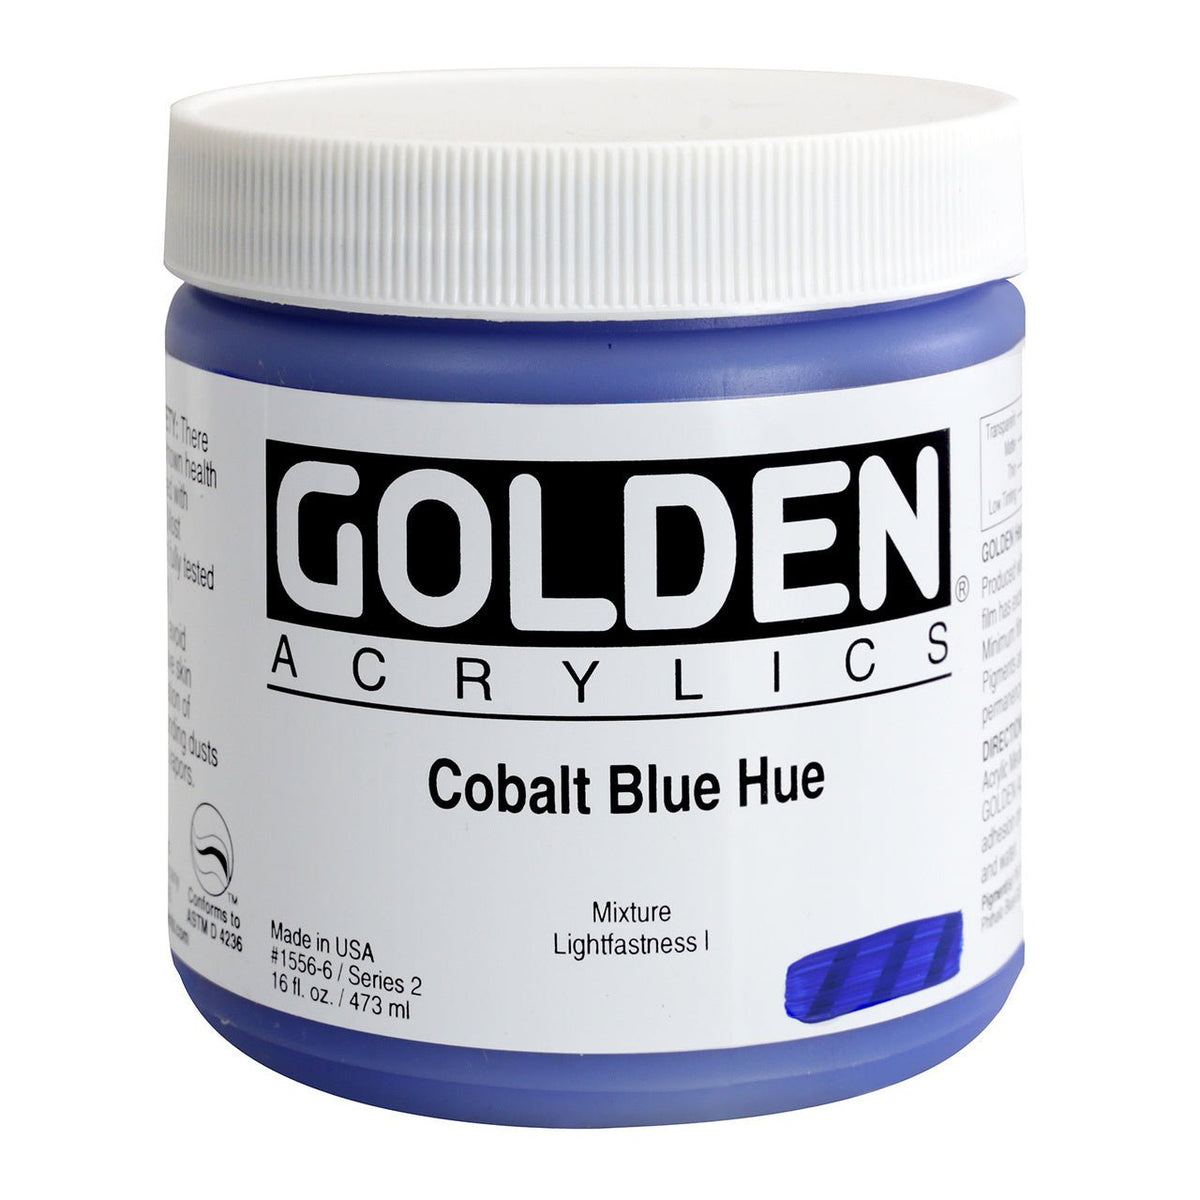 Golden Heavy Body Acrylic Cobalt Blue Hue 16 oz - merriartist.com